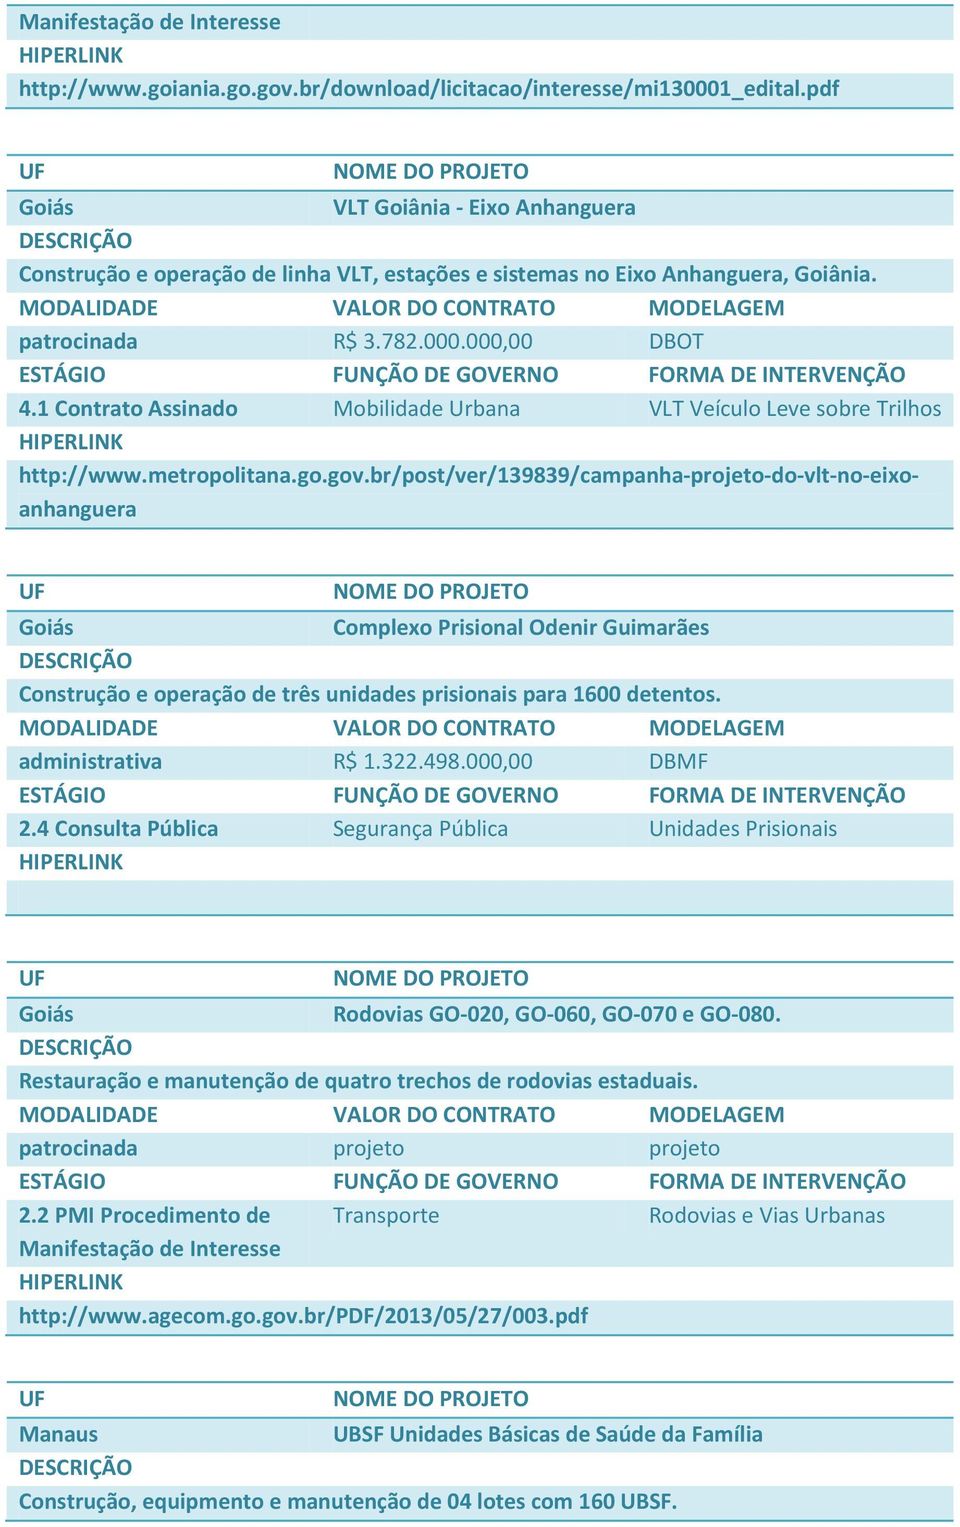 br/post/ver/139839/campanha-projeto-do-vlt-no-eixoanhanguera Goiás Complexo Prisional Odenir Guimarães Construção e operação de três unidades prisionais para 1600 detentos. administrativa R$ 1.322.